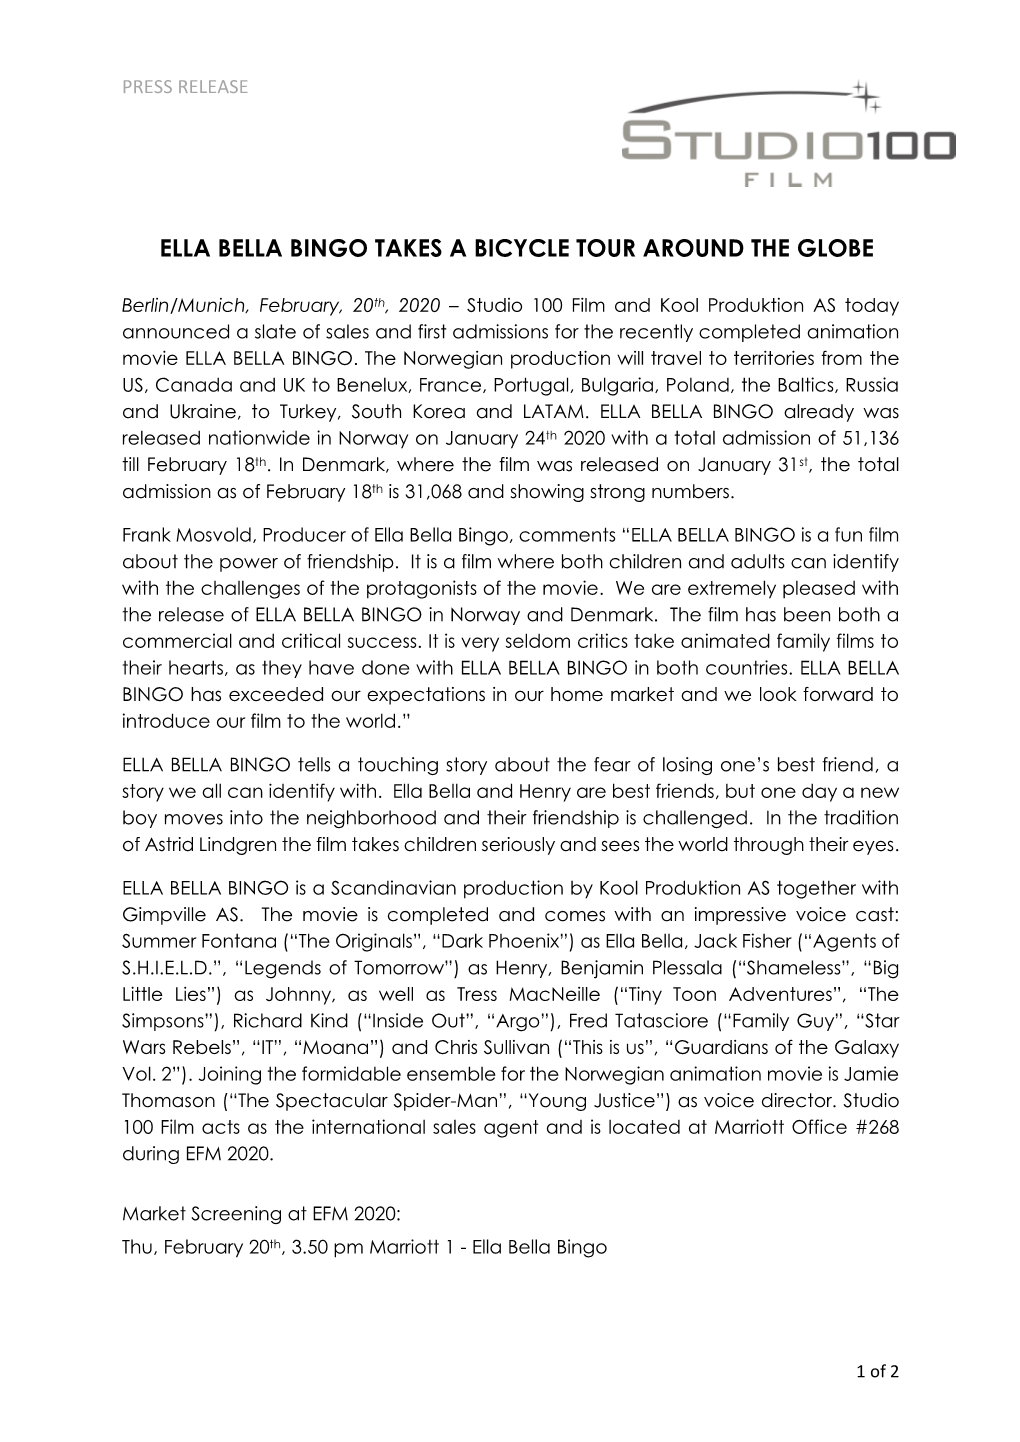 Ella Bella Bingo Takes a Bicycle Tour Around the Globe